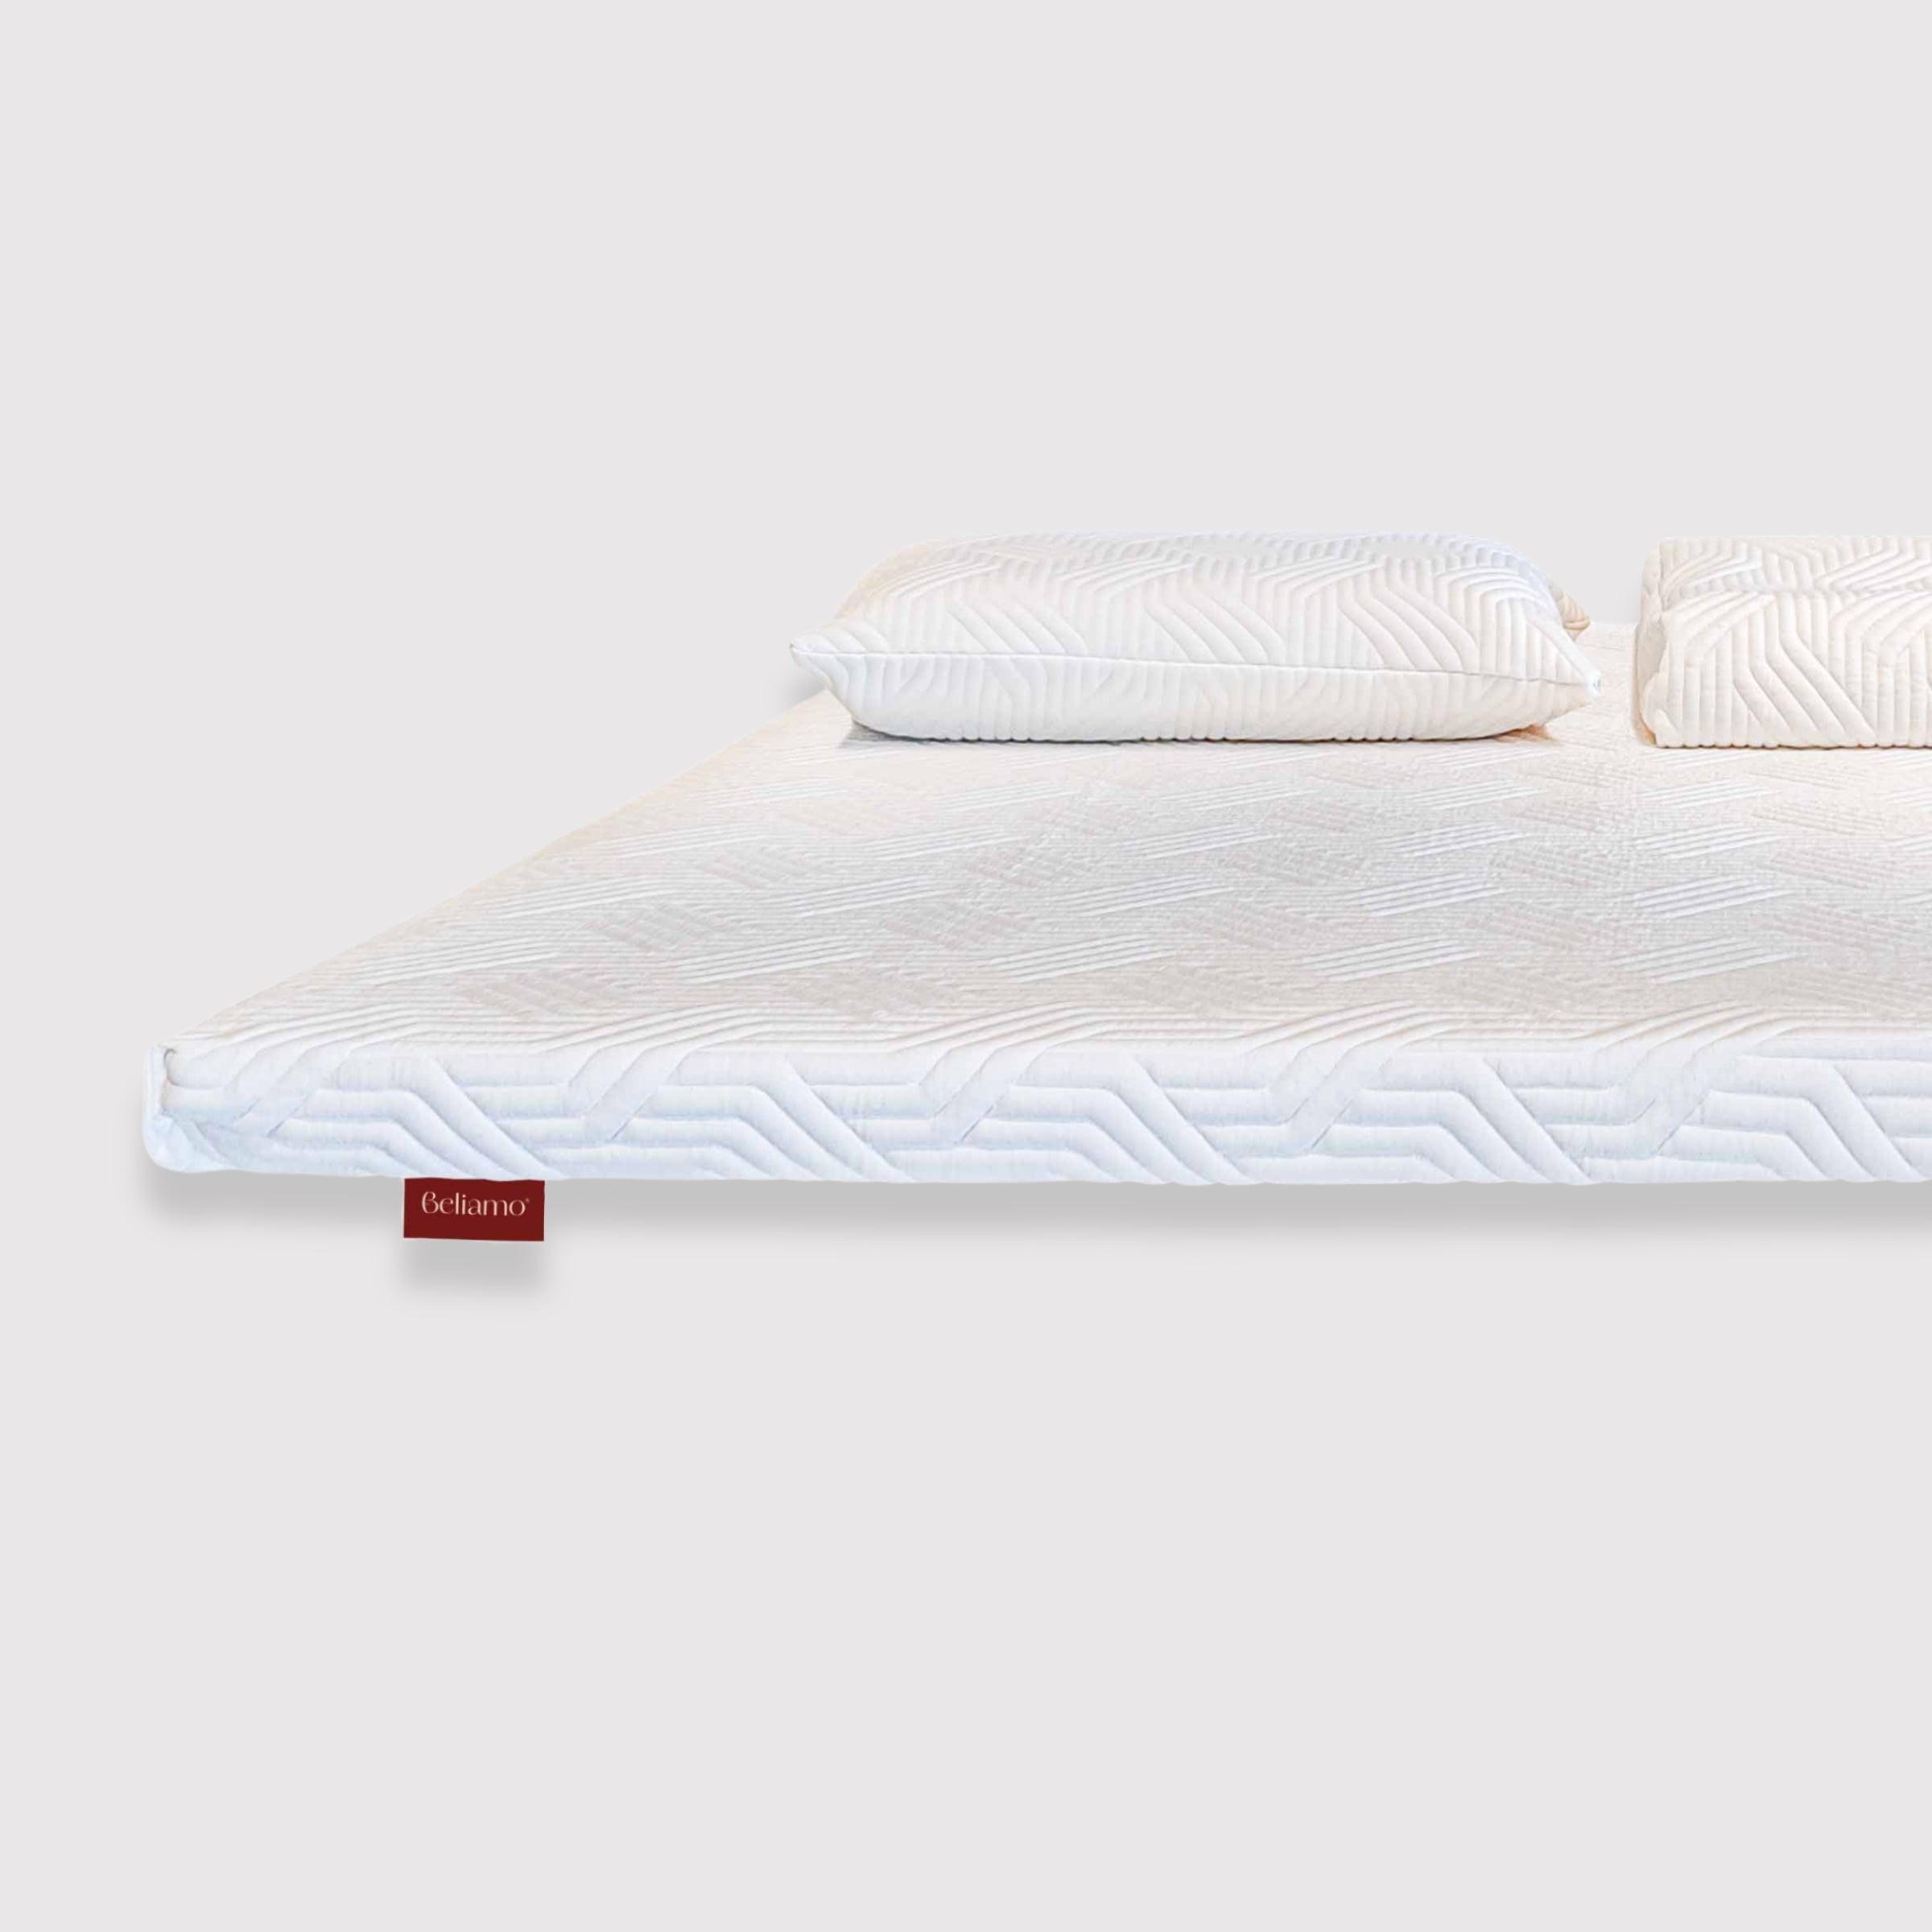 Topper Bellini in Hydrogel di Beliamo, progettato per aggiungere comfort e supporto al materasso, migliorando la qualità del sonno con materiali traspiranti ed ergonomici.